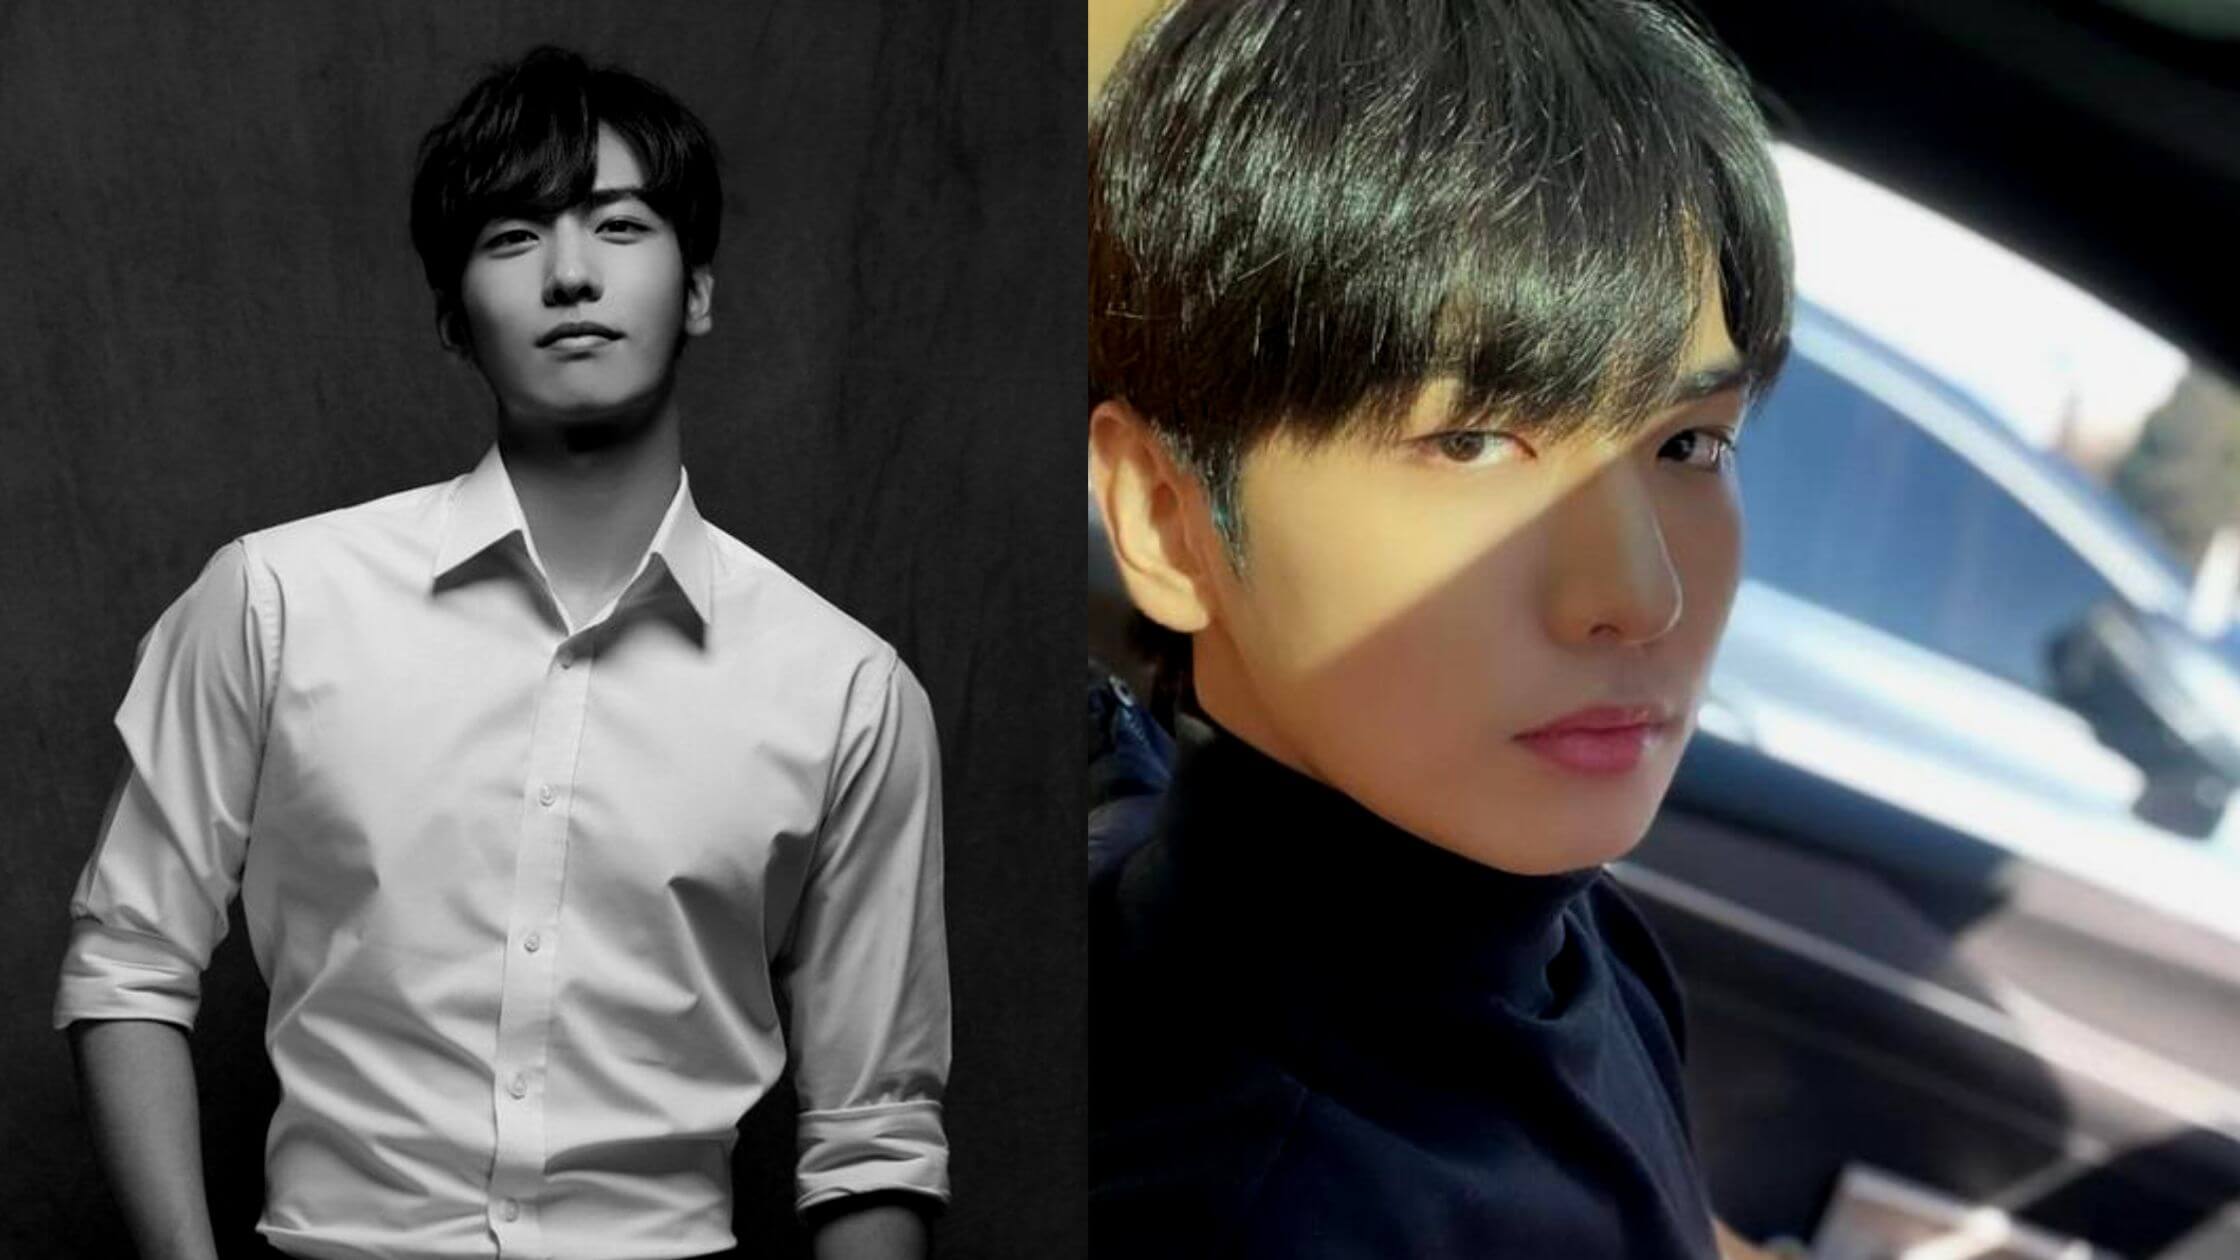 Lee Ji Han K-Pop Singer And Actor Died In Seoul Crowd Crush